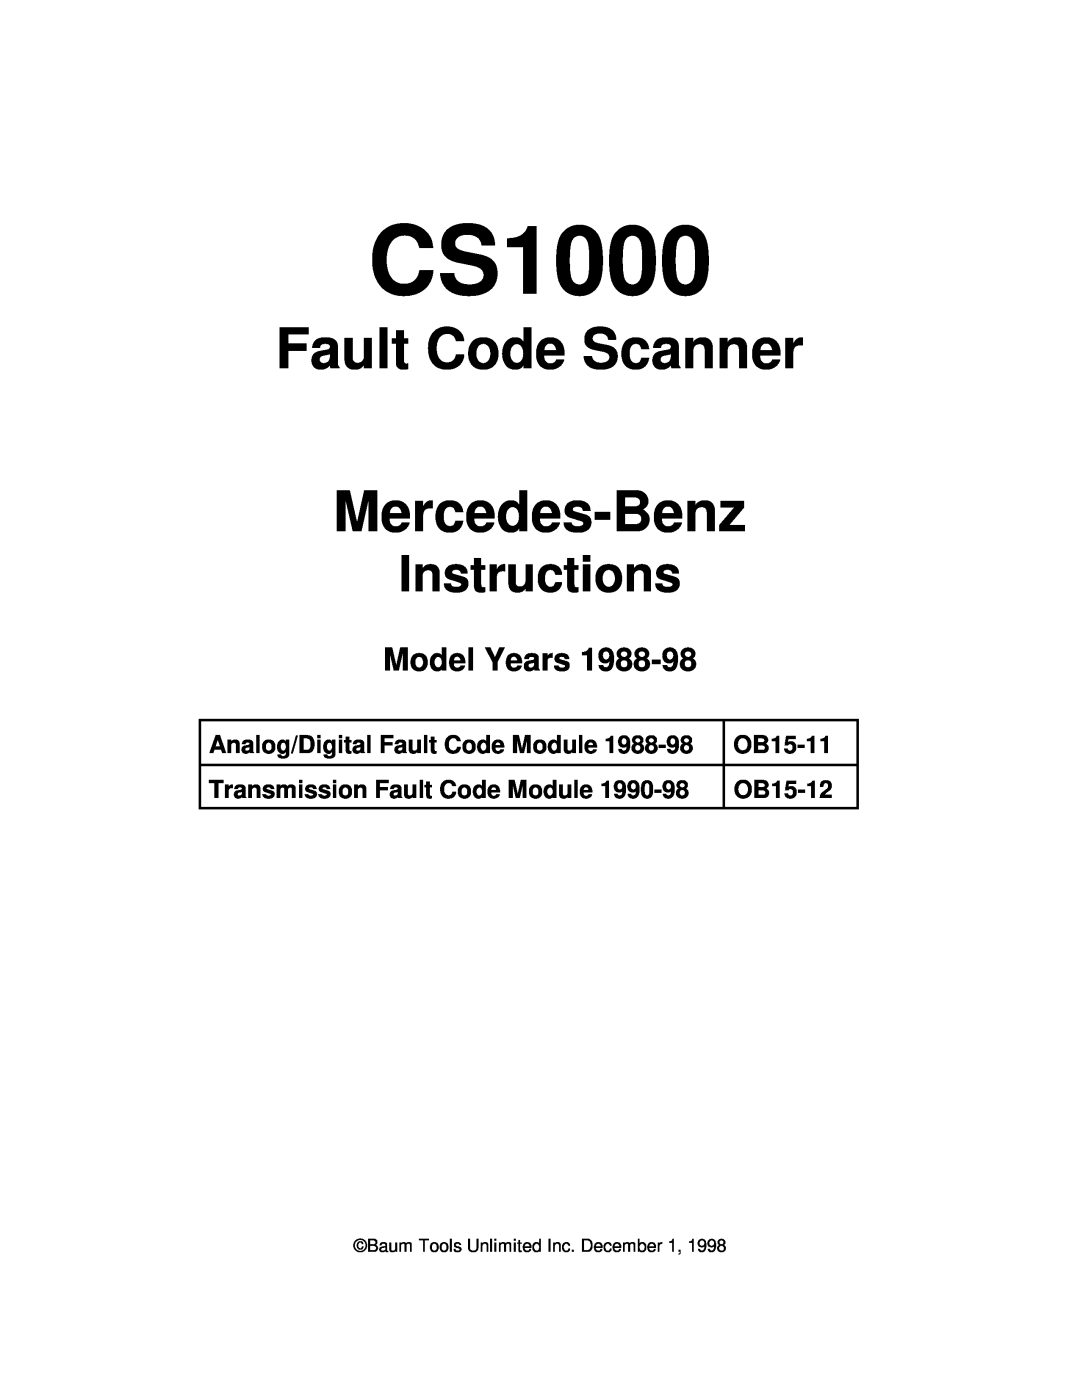 Mercedes-Benz CS1000 manual Fault Code Scanner Mercedes-Benz, Model Years, Analog/Digital Fault Code Module, OB15-11 